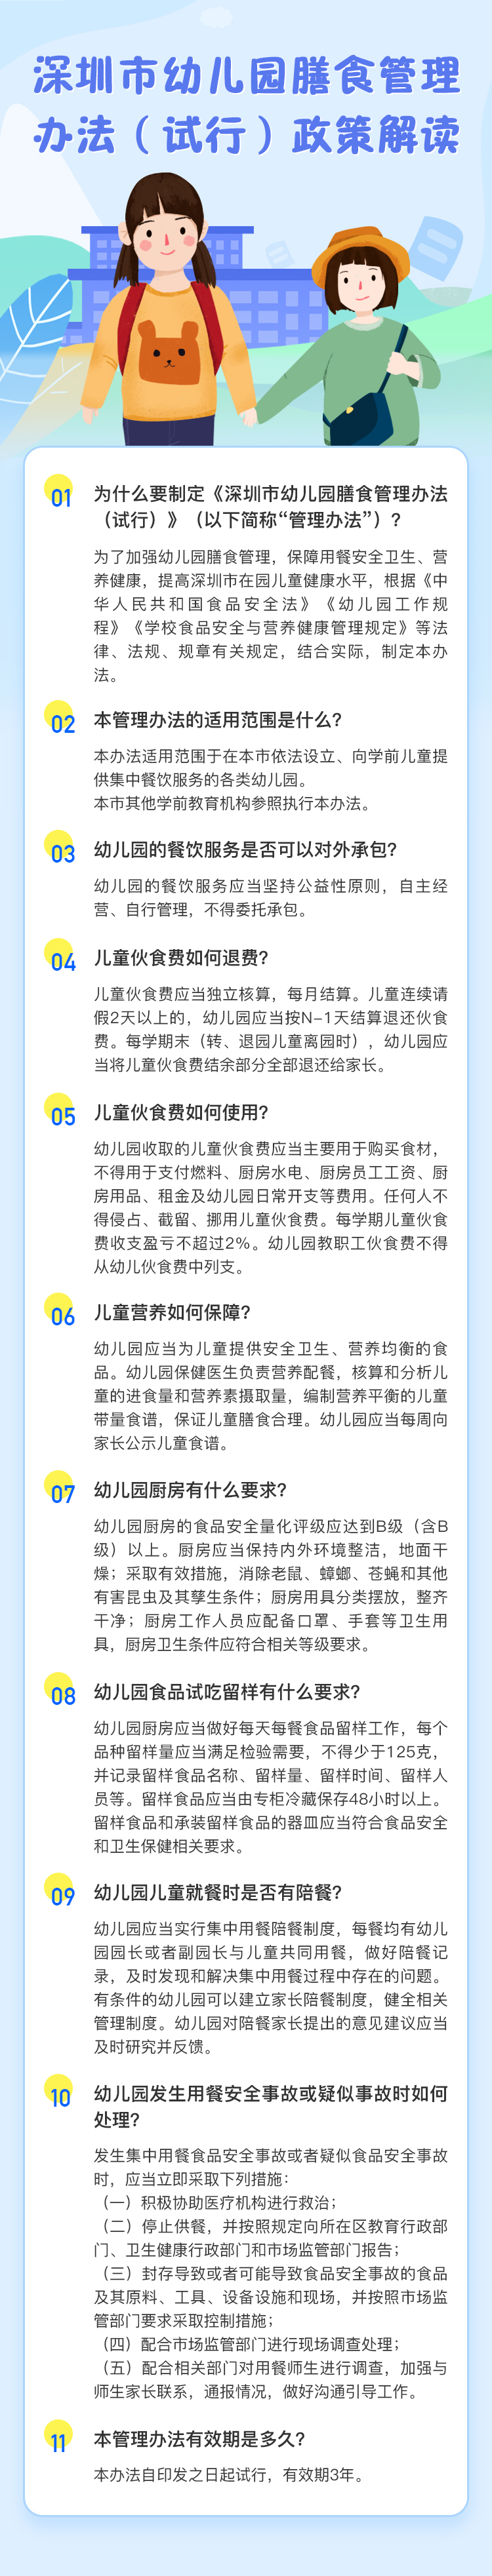 深圳市幼儿园膳食管理办法（试行）政策解读.jpg